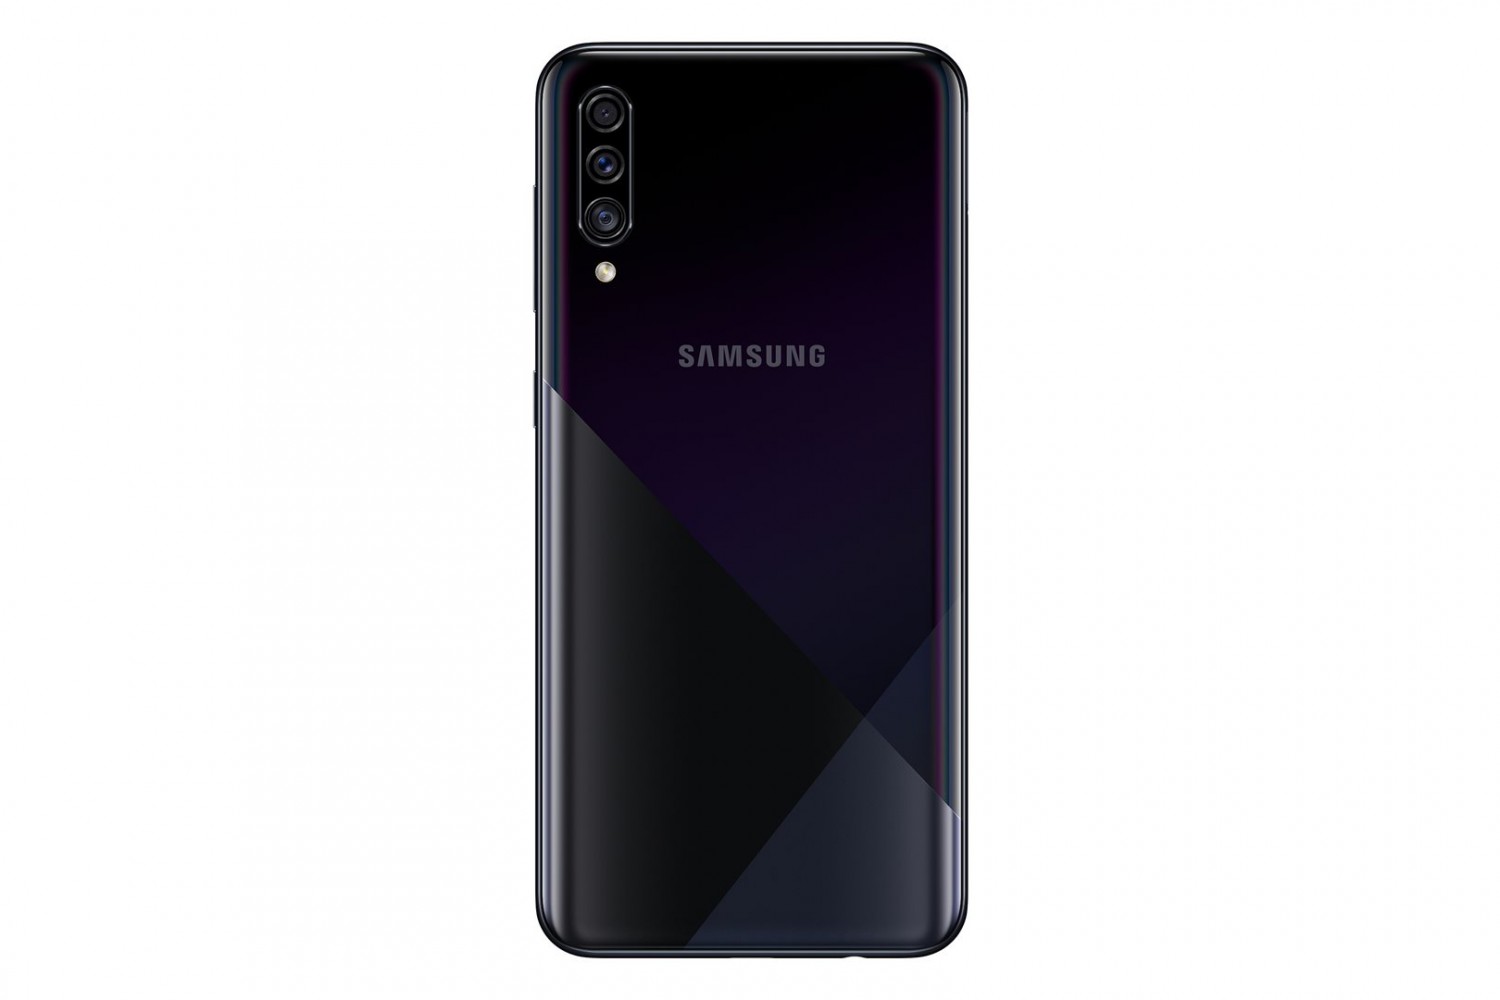 Samsung Galaxy A30s SM-A307 4GB/64GB černá